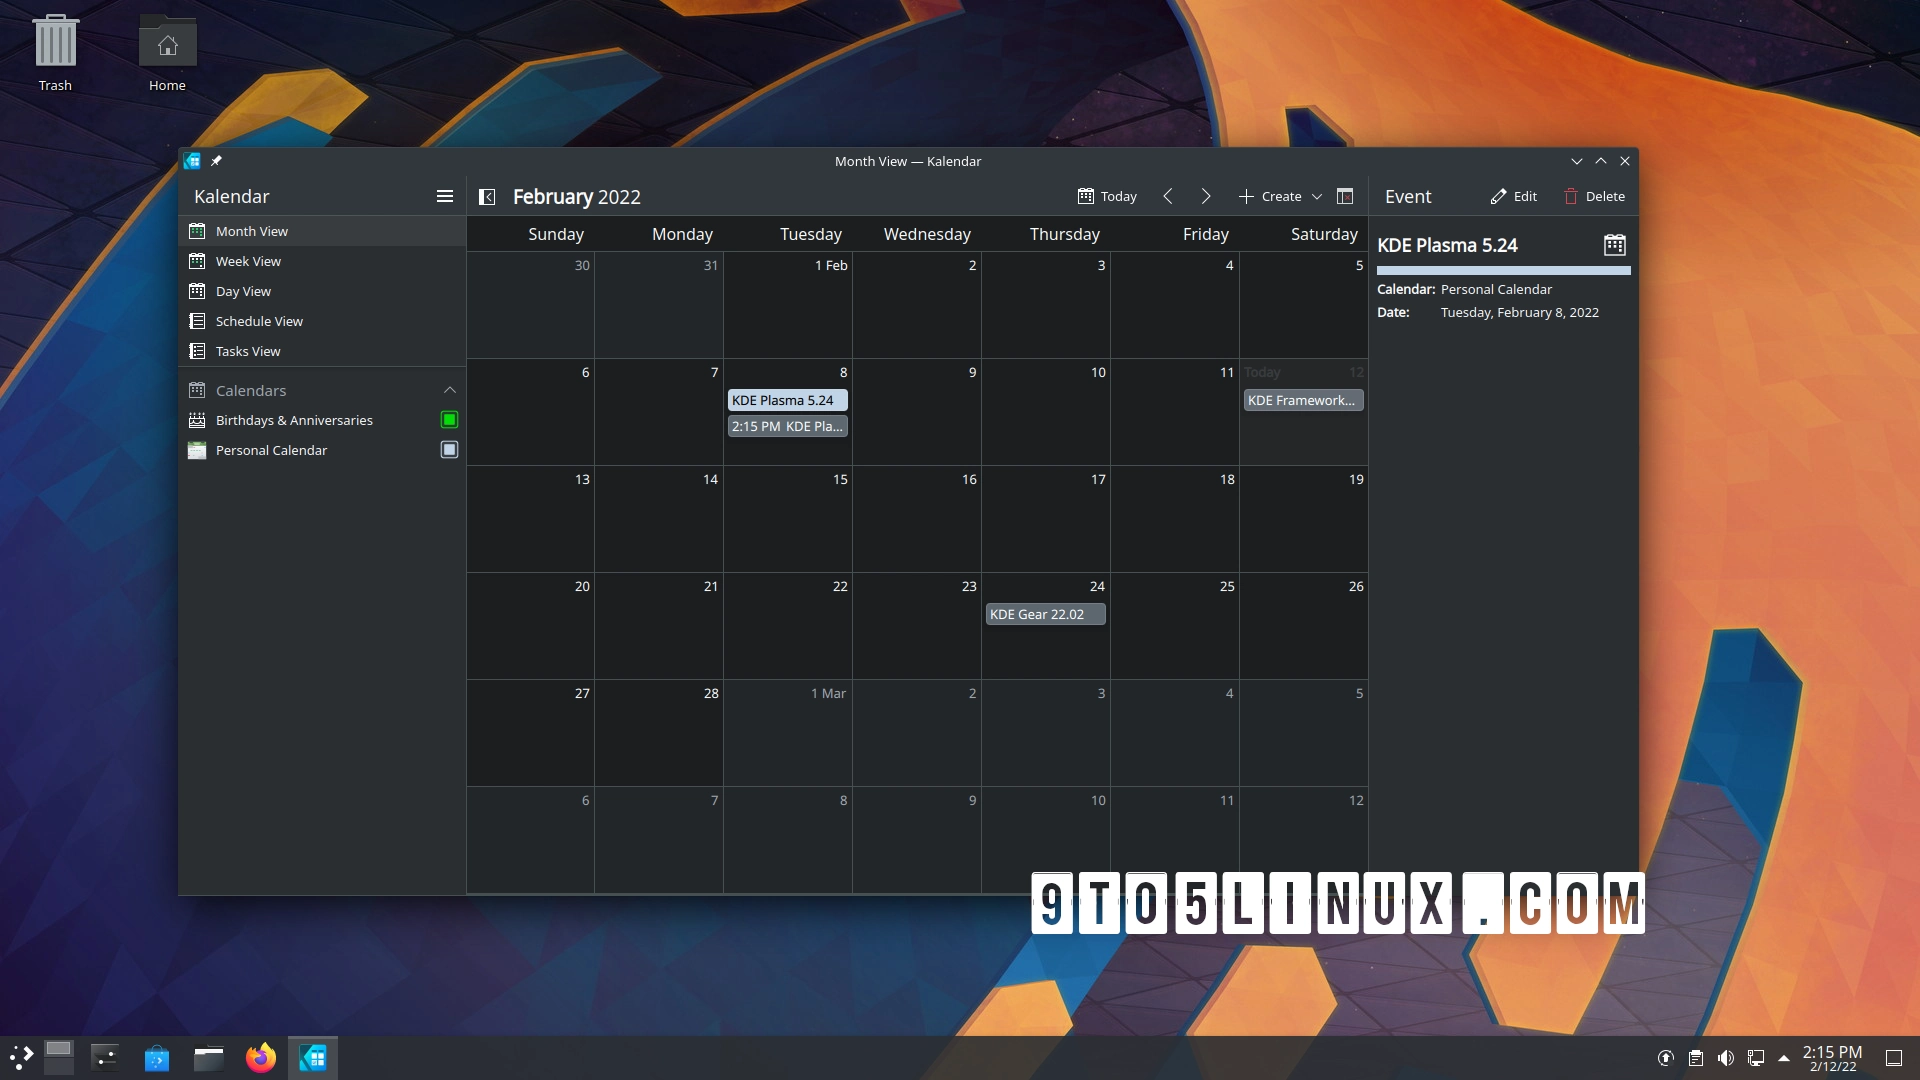 Kalendar 1.0 Is Out: KDE Plasma Now Has a Mature, Dedicated Calendar Client